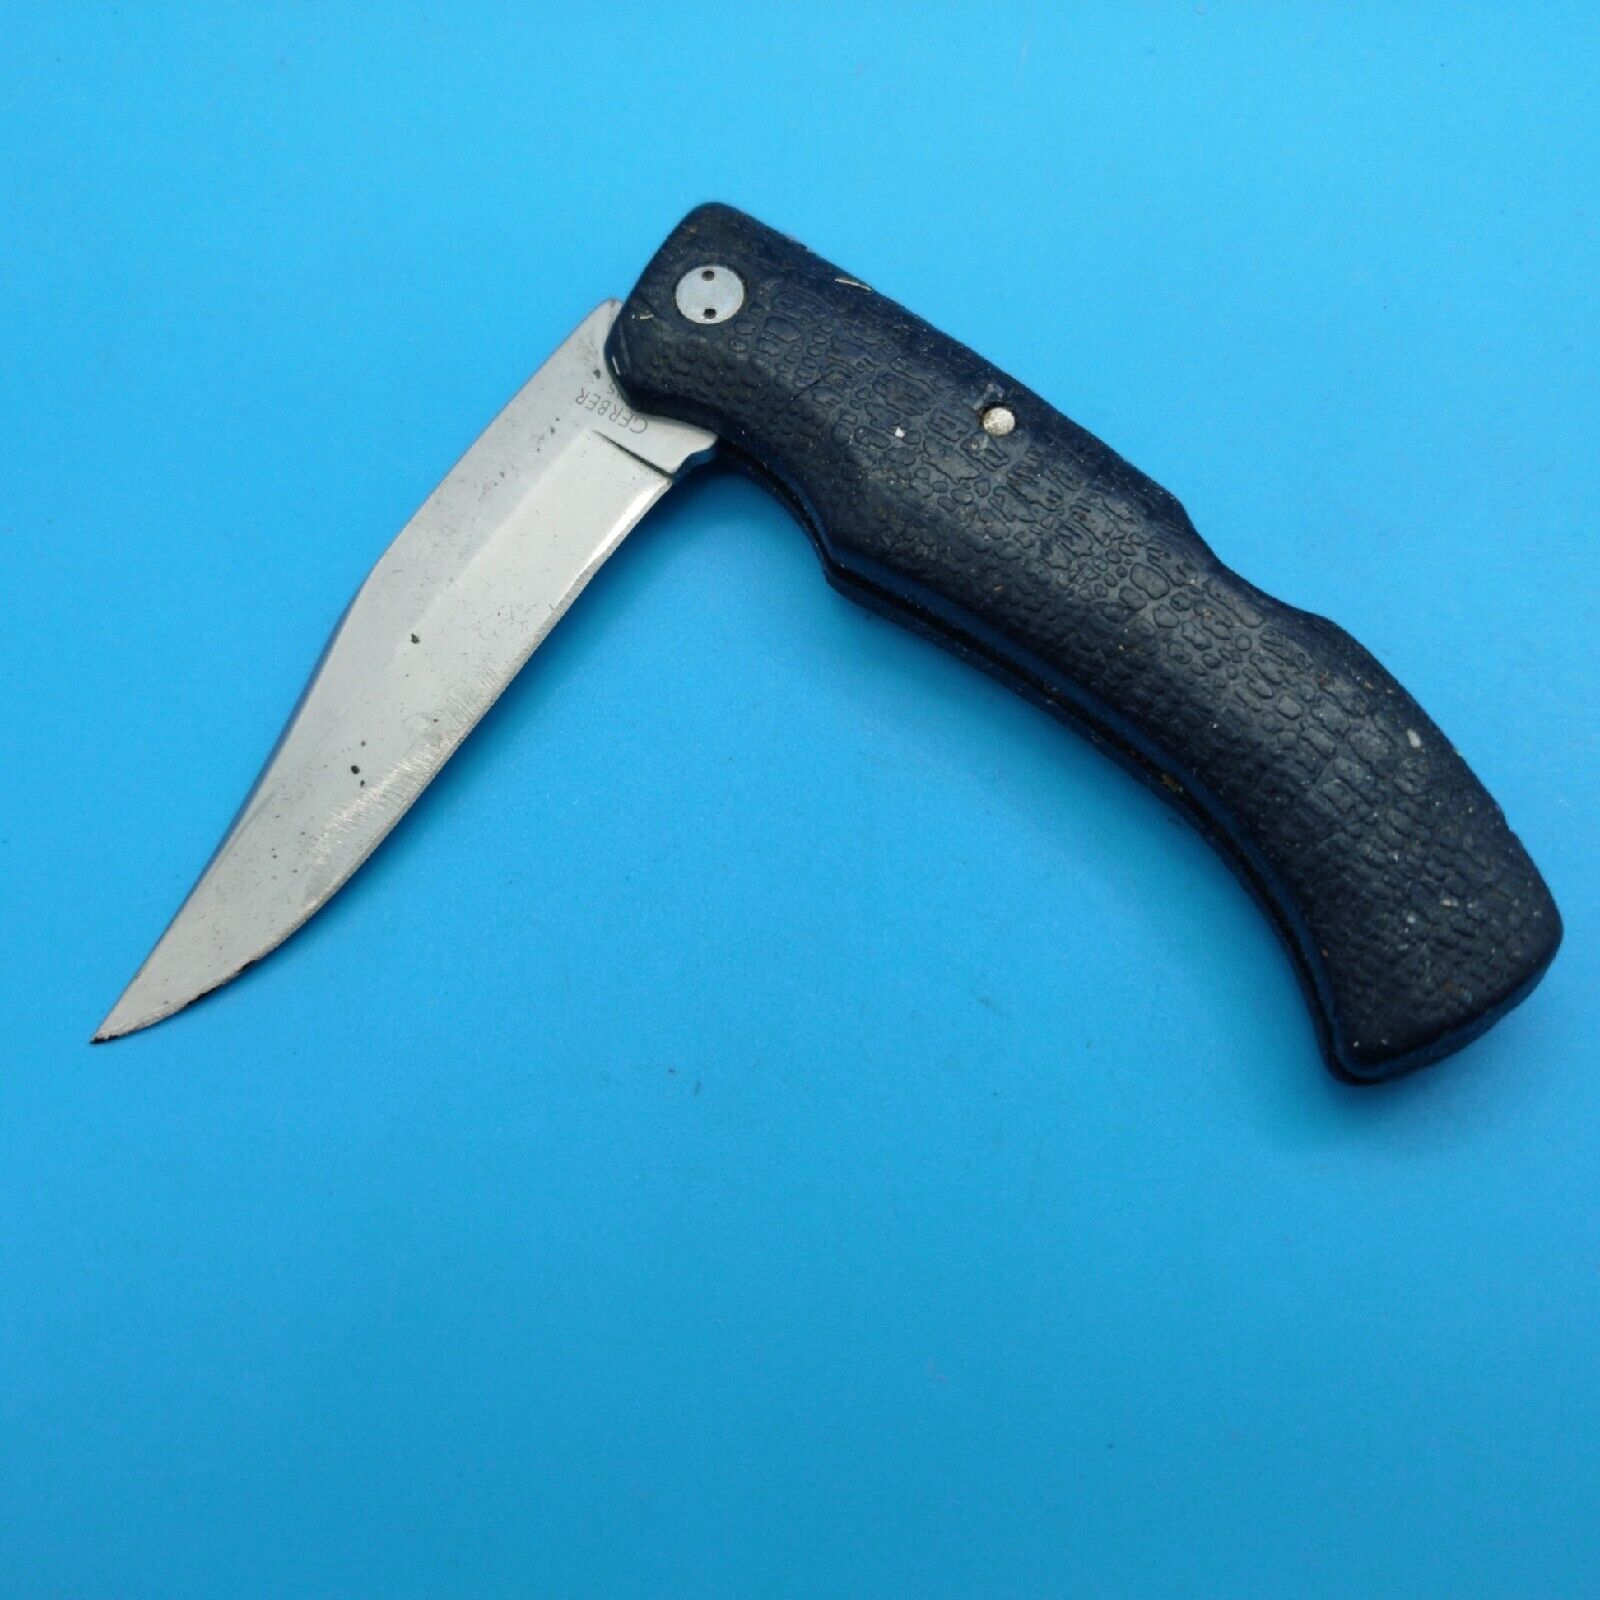 GERBER Gator 625 Black Folding Pocket Knife Lockback Rubber handle